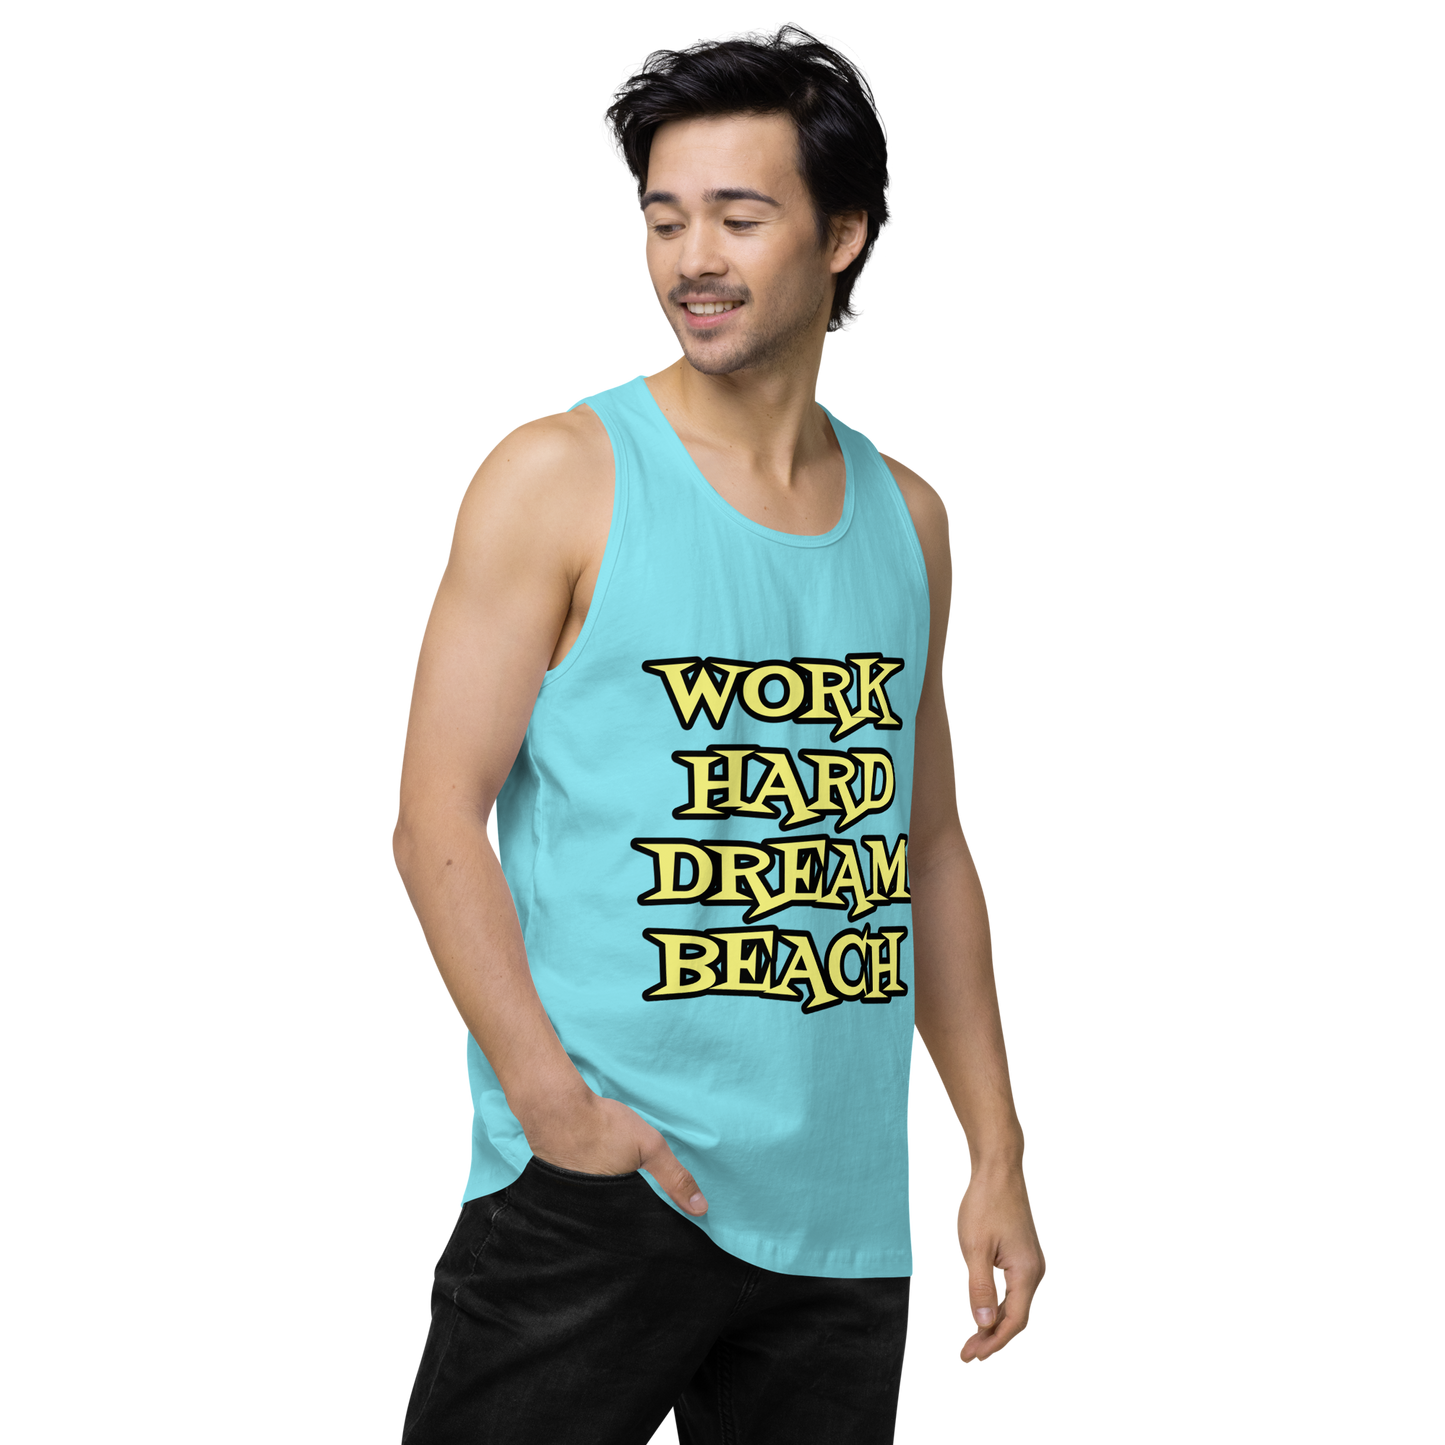 Men’s Premium Tank - "Work Hard, Dream Beach"